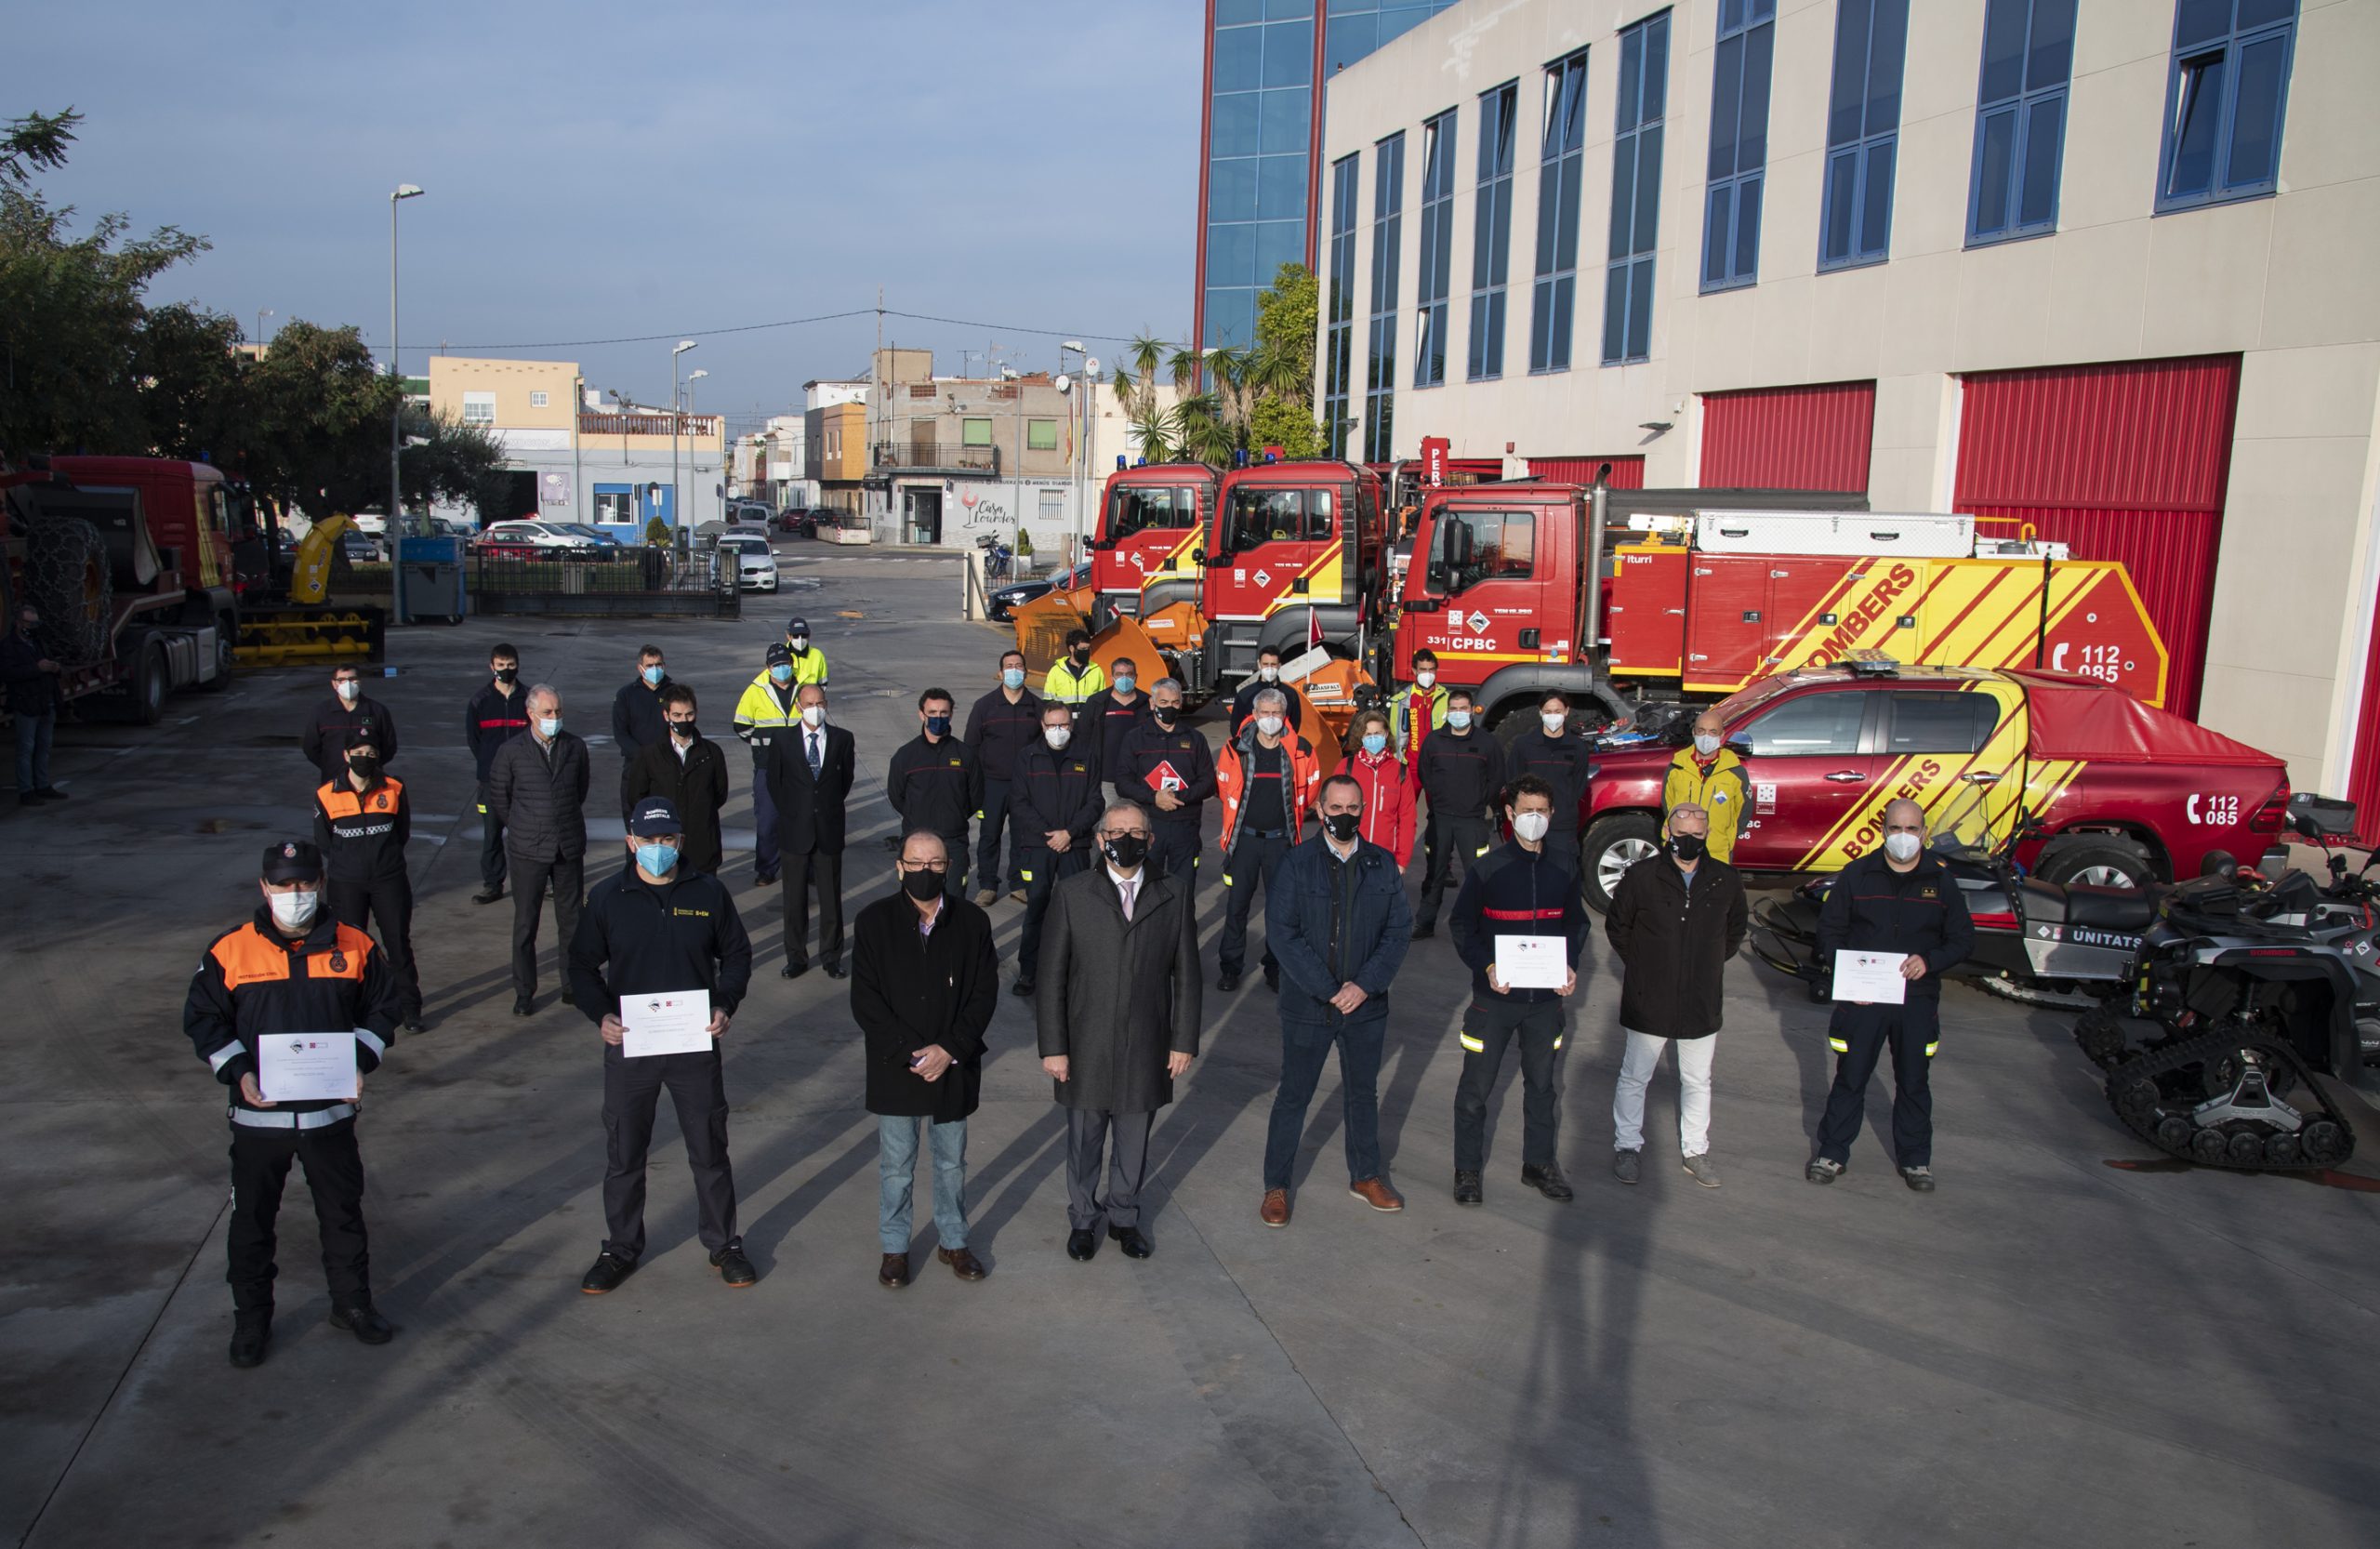 La Diputación de Castellón invierte 600.000 euros para dotar con tecnología punta de seguridad personal y nuevo vestuario a los bomberos del Consorcio Provincial